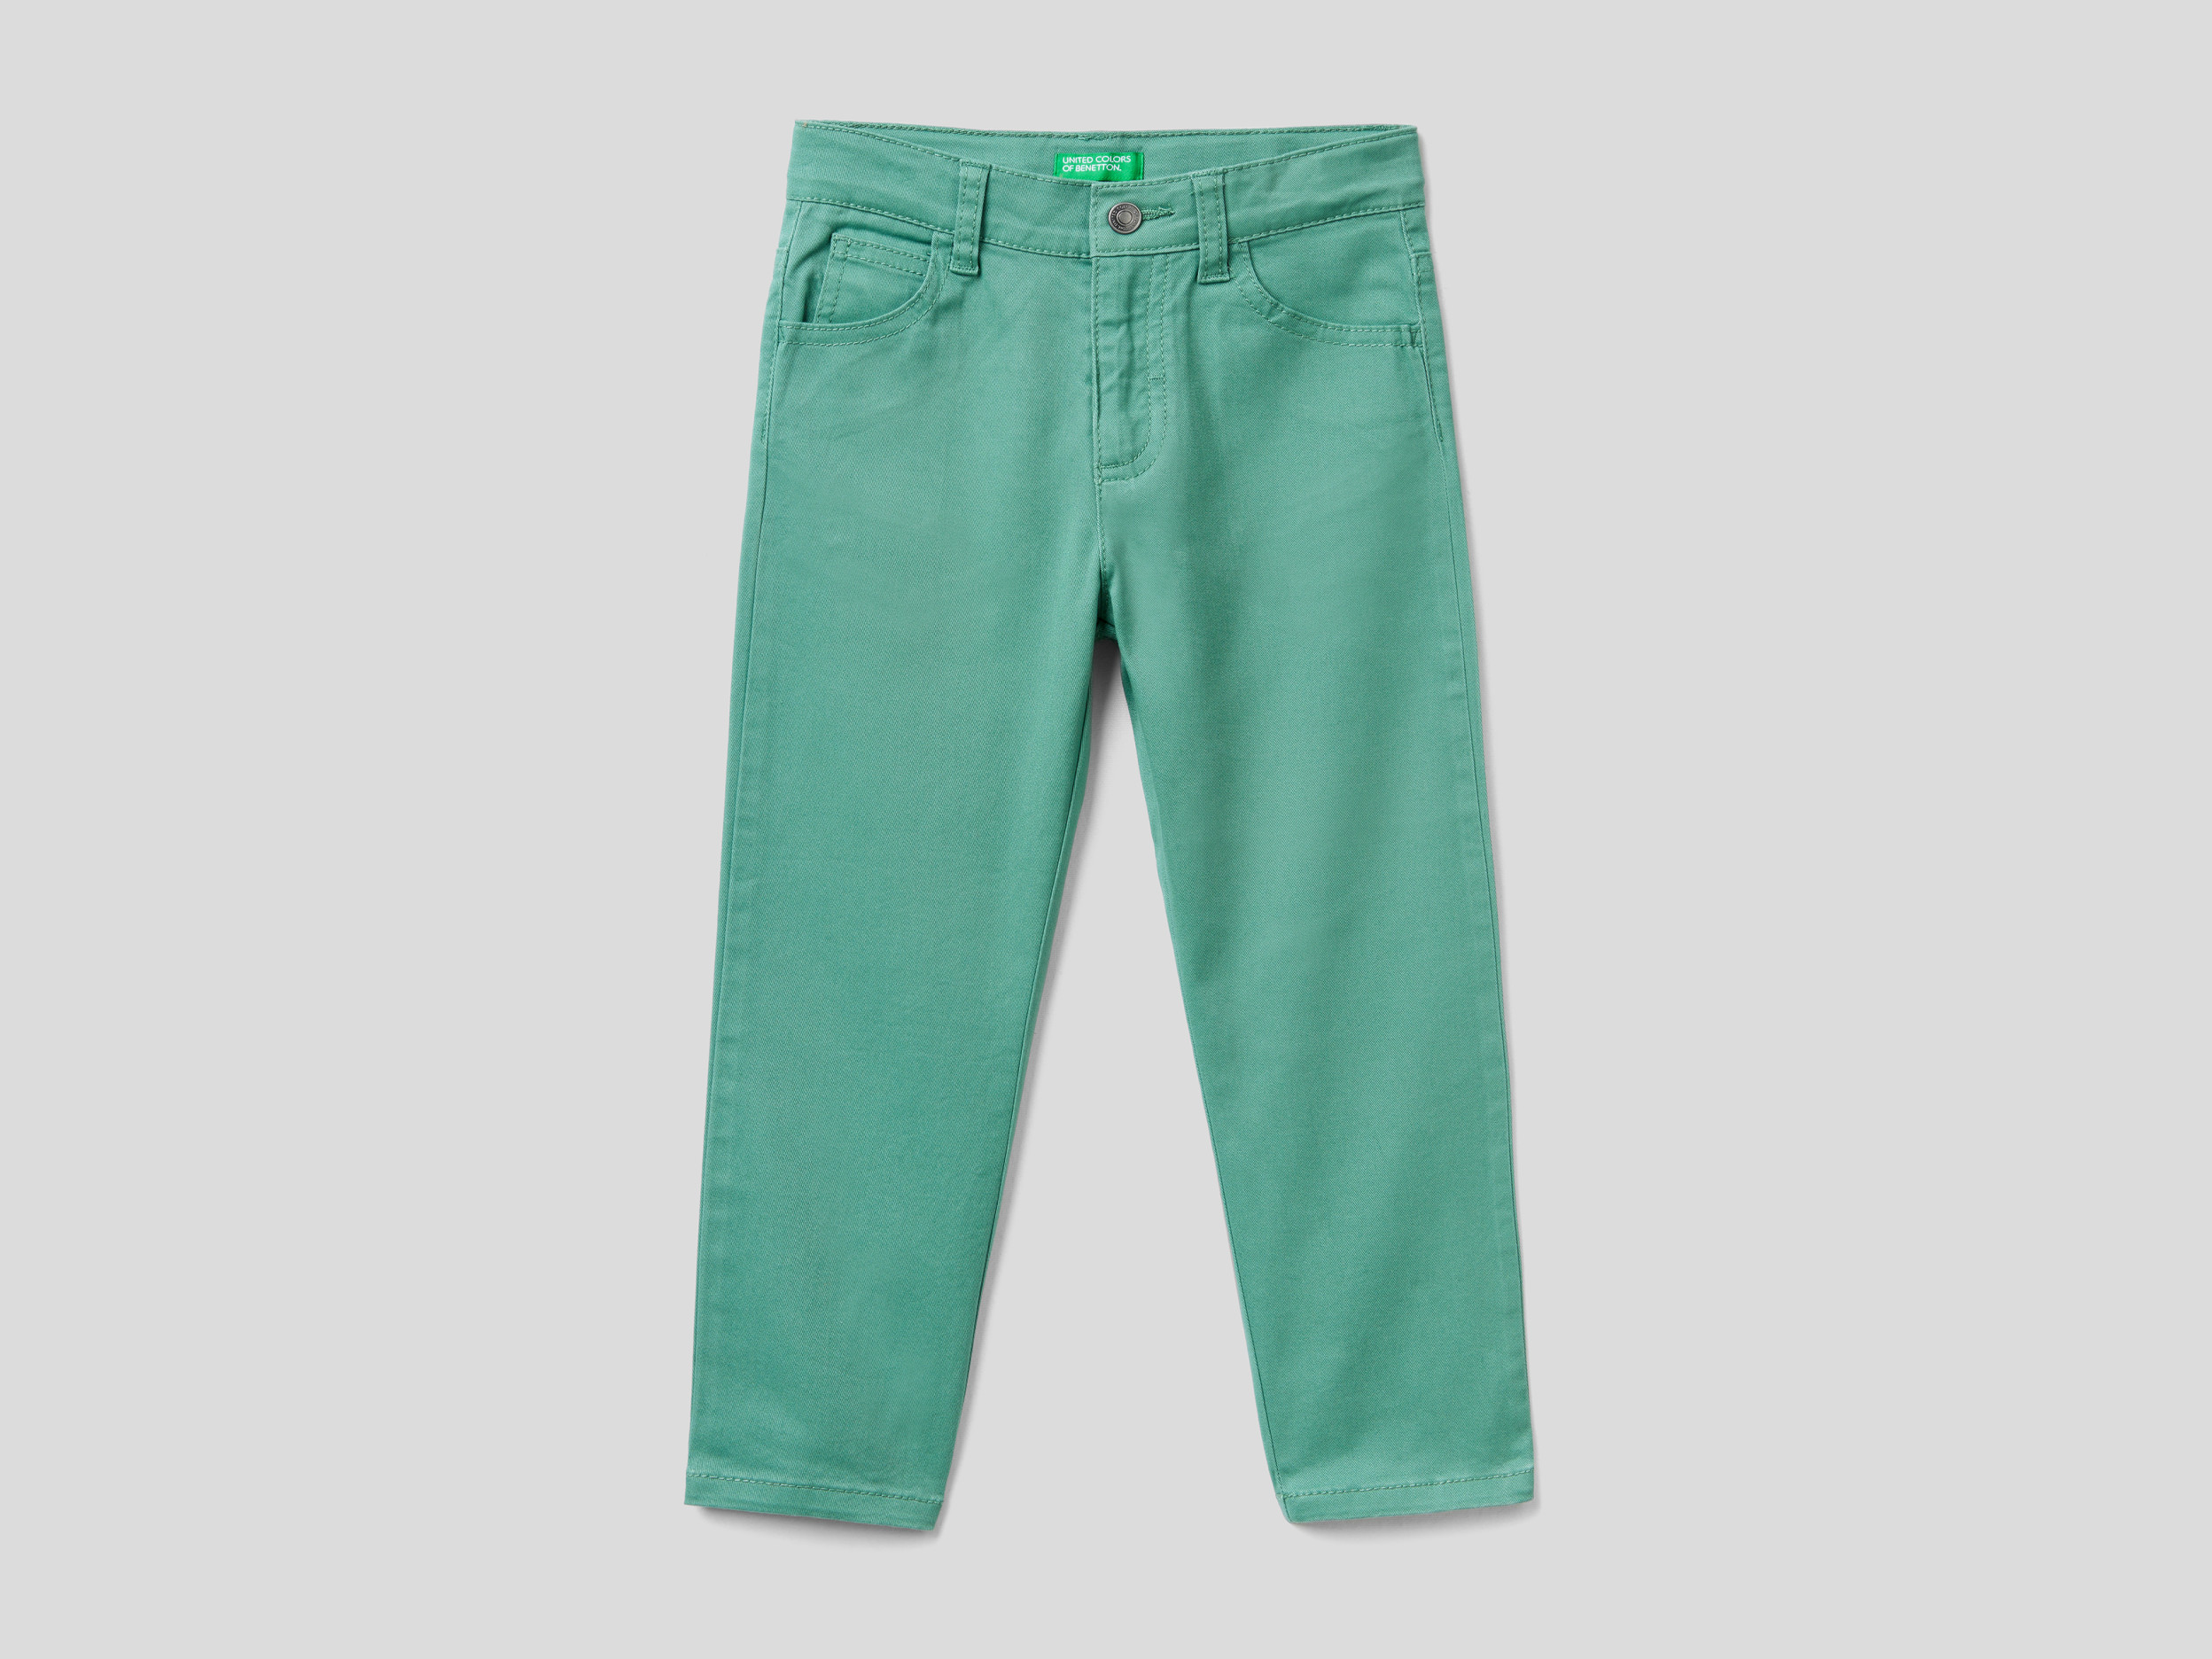 Benetton, Pantaloni Stretch Cinque Tasche, Verde, Bambini